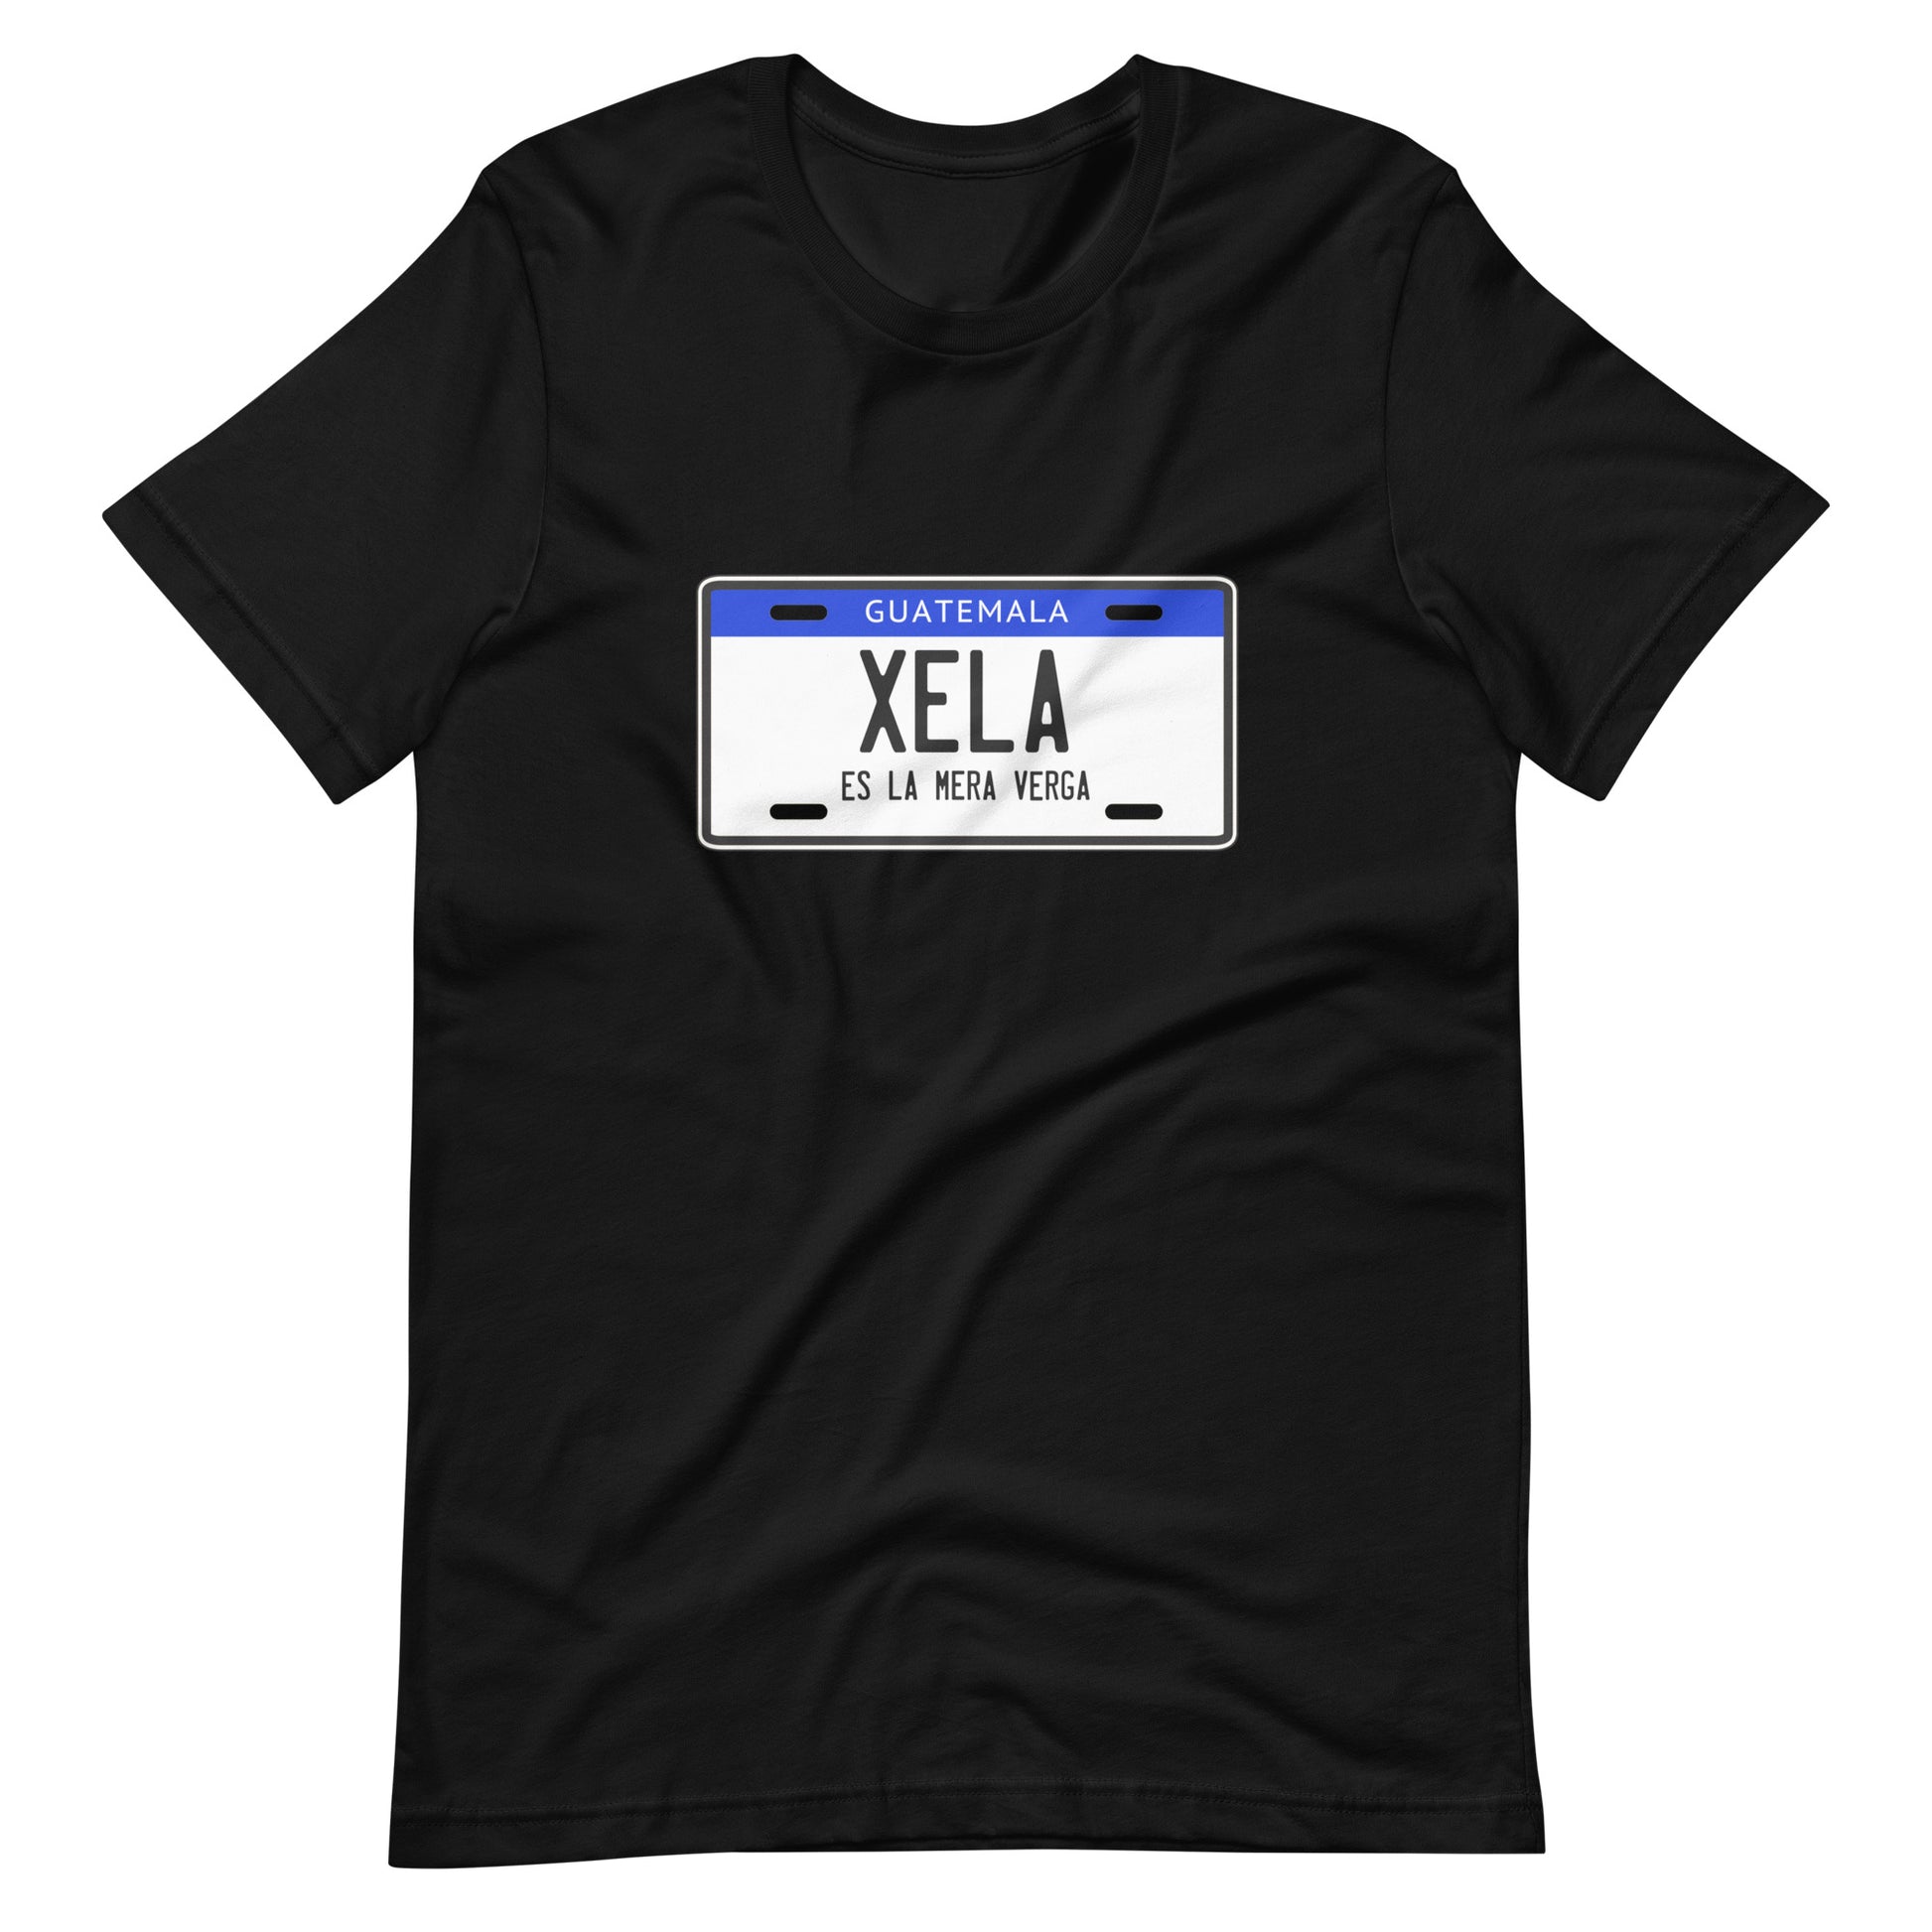 Playera de Xela es la V..., Descubre calidad excepcional y estampados duraderos. Encuentra estilo y orgullo en cada prenda.